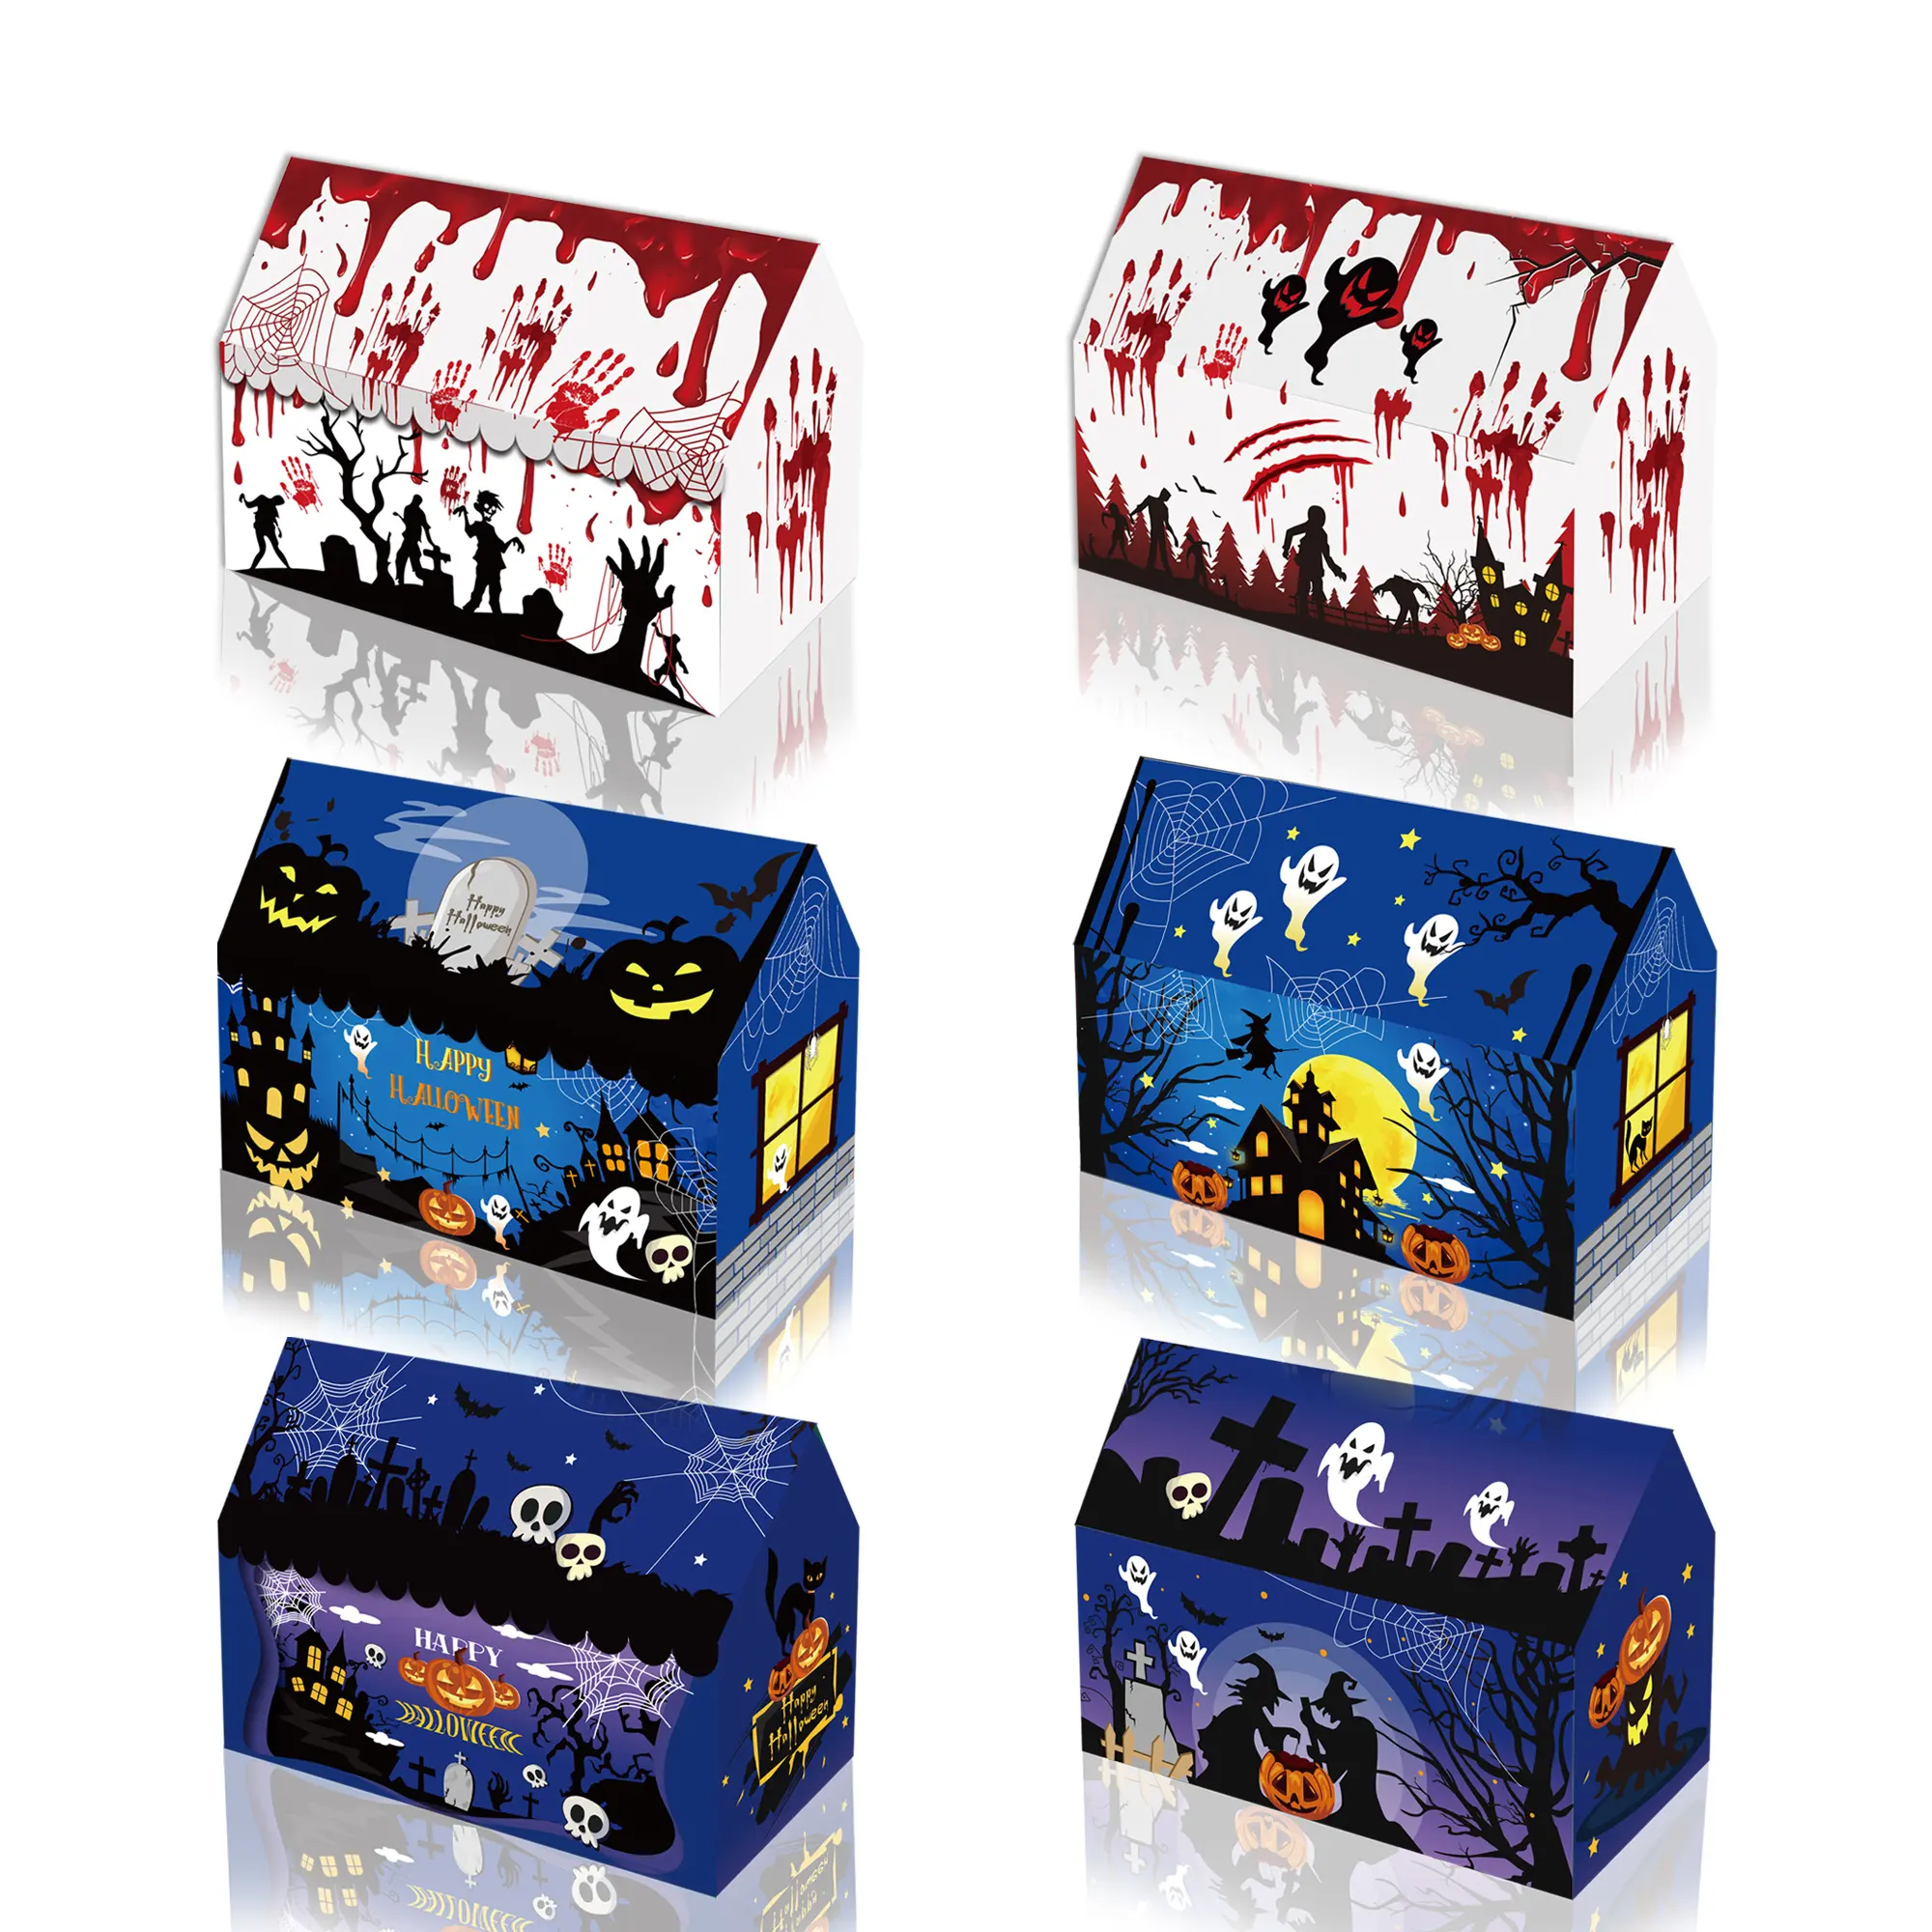 Xindeli KZ063 Caja de papel temática de Halloween Regalo de pastel Cajas de embalaje de alimentos para Halloween Regalo para niños Suministros para fiestas